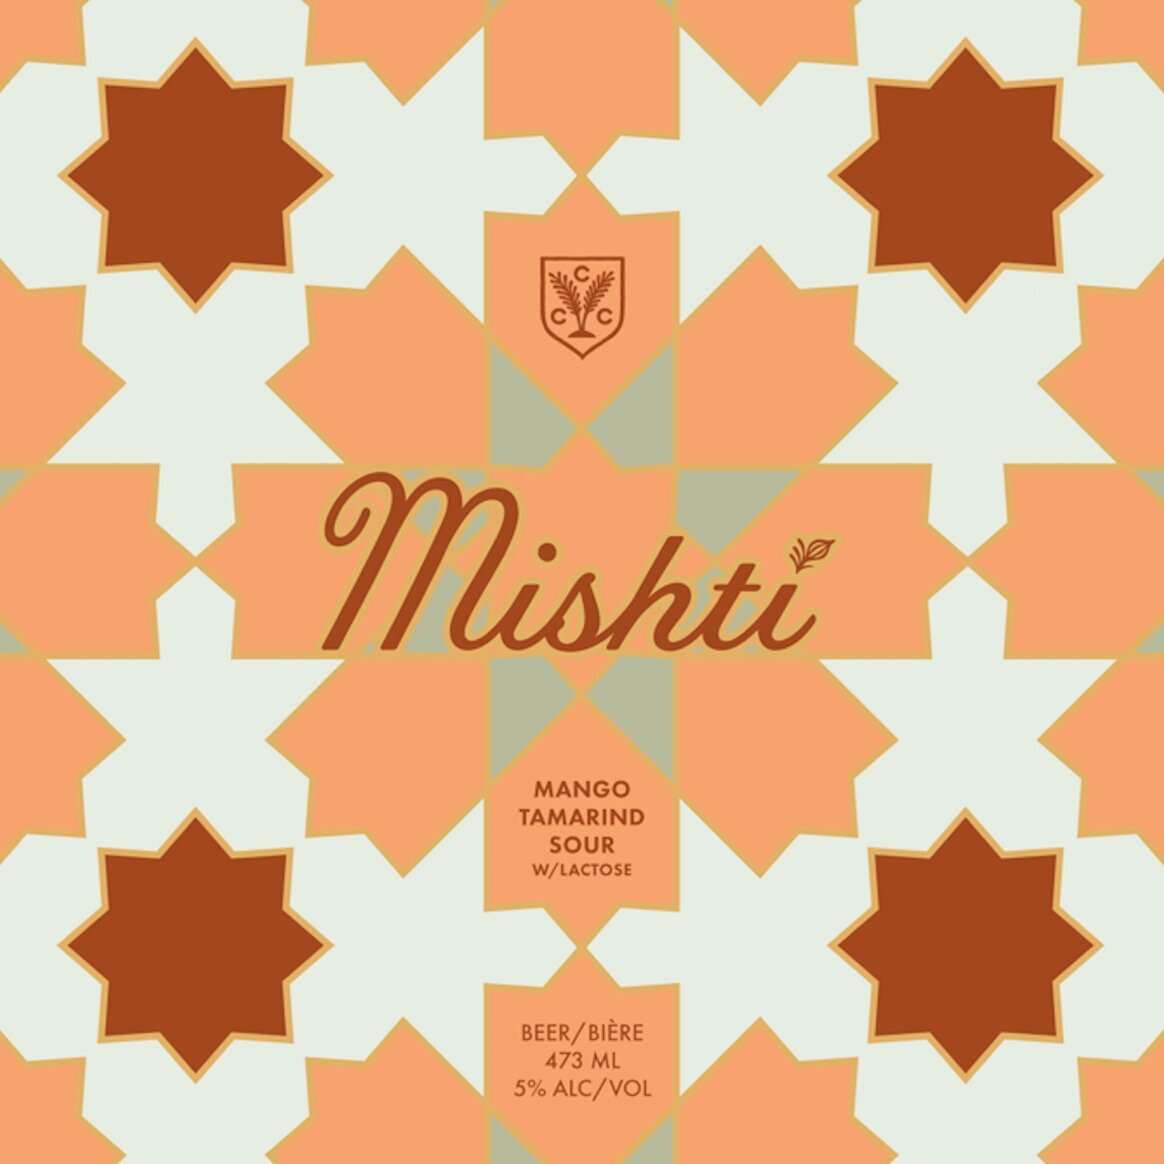 MISHTI